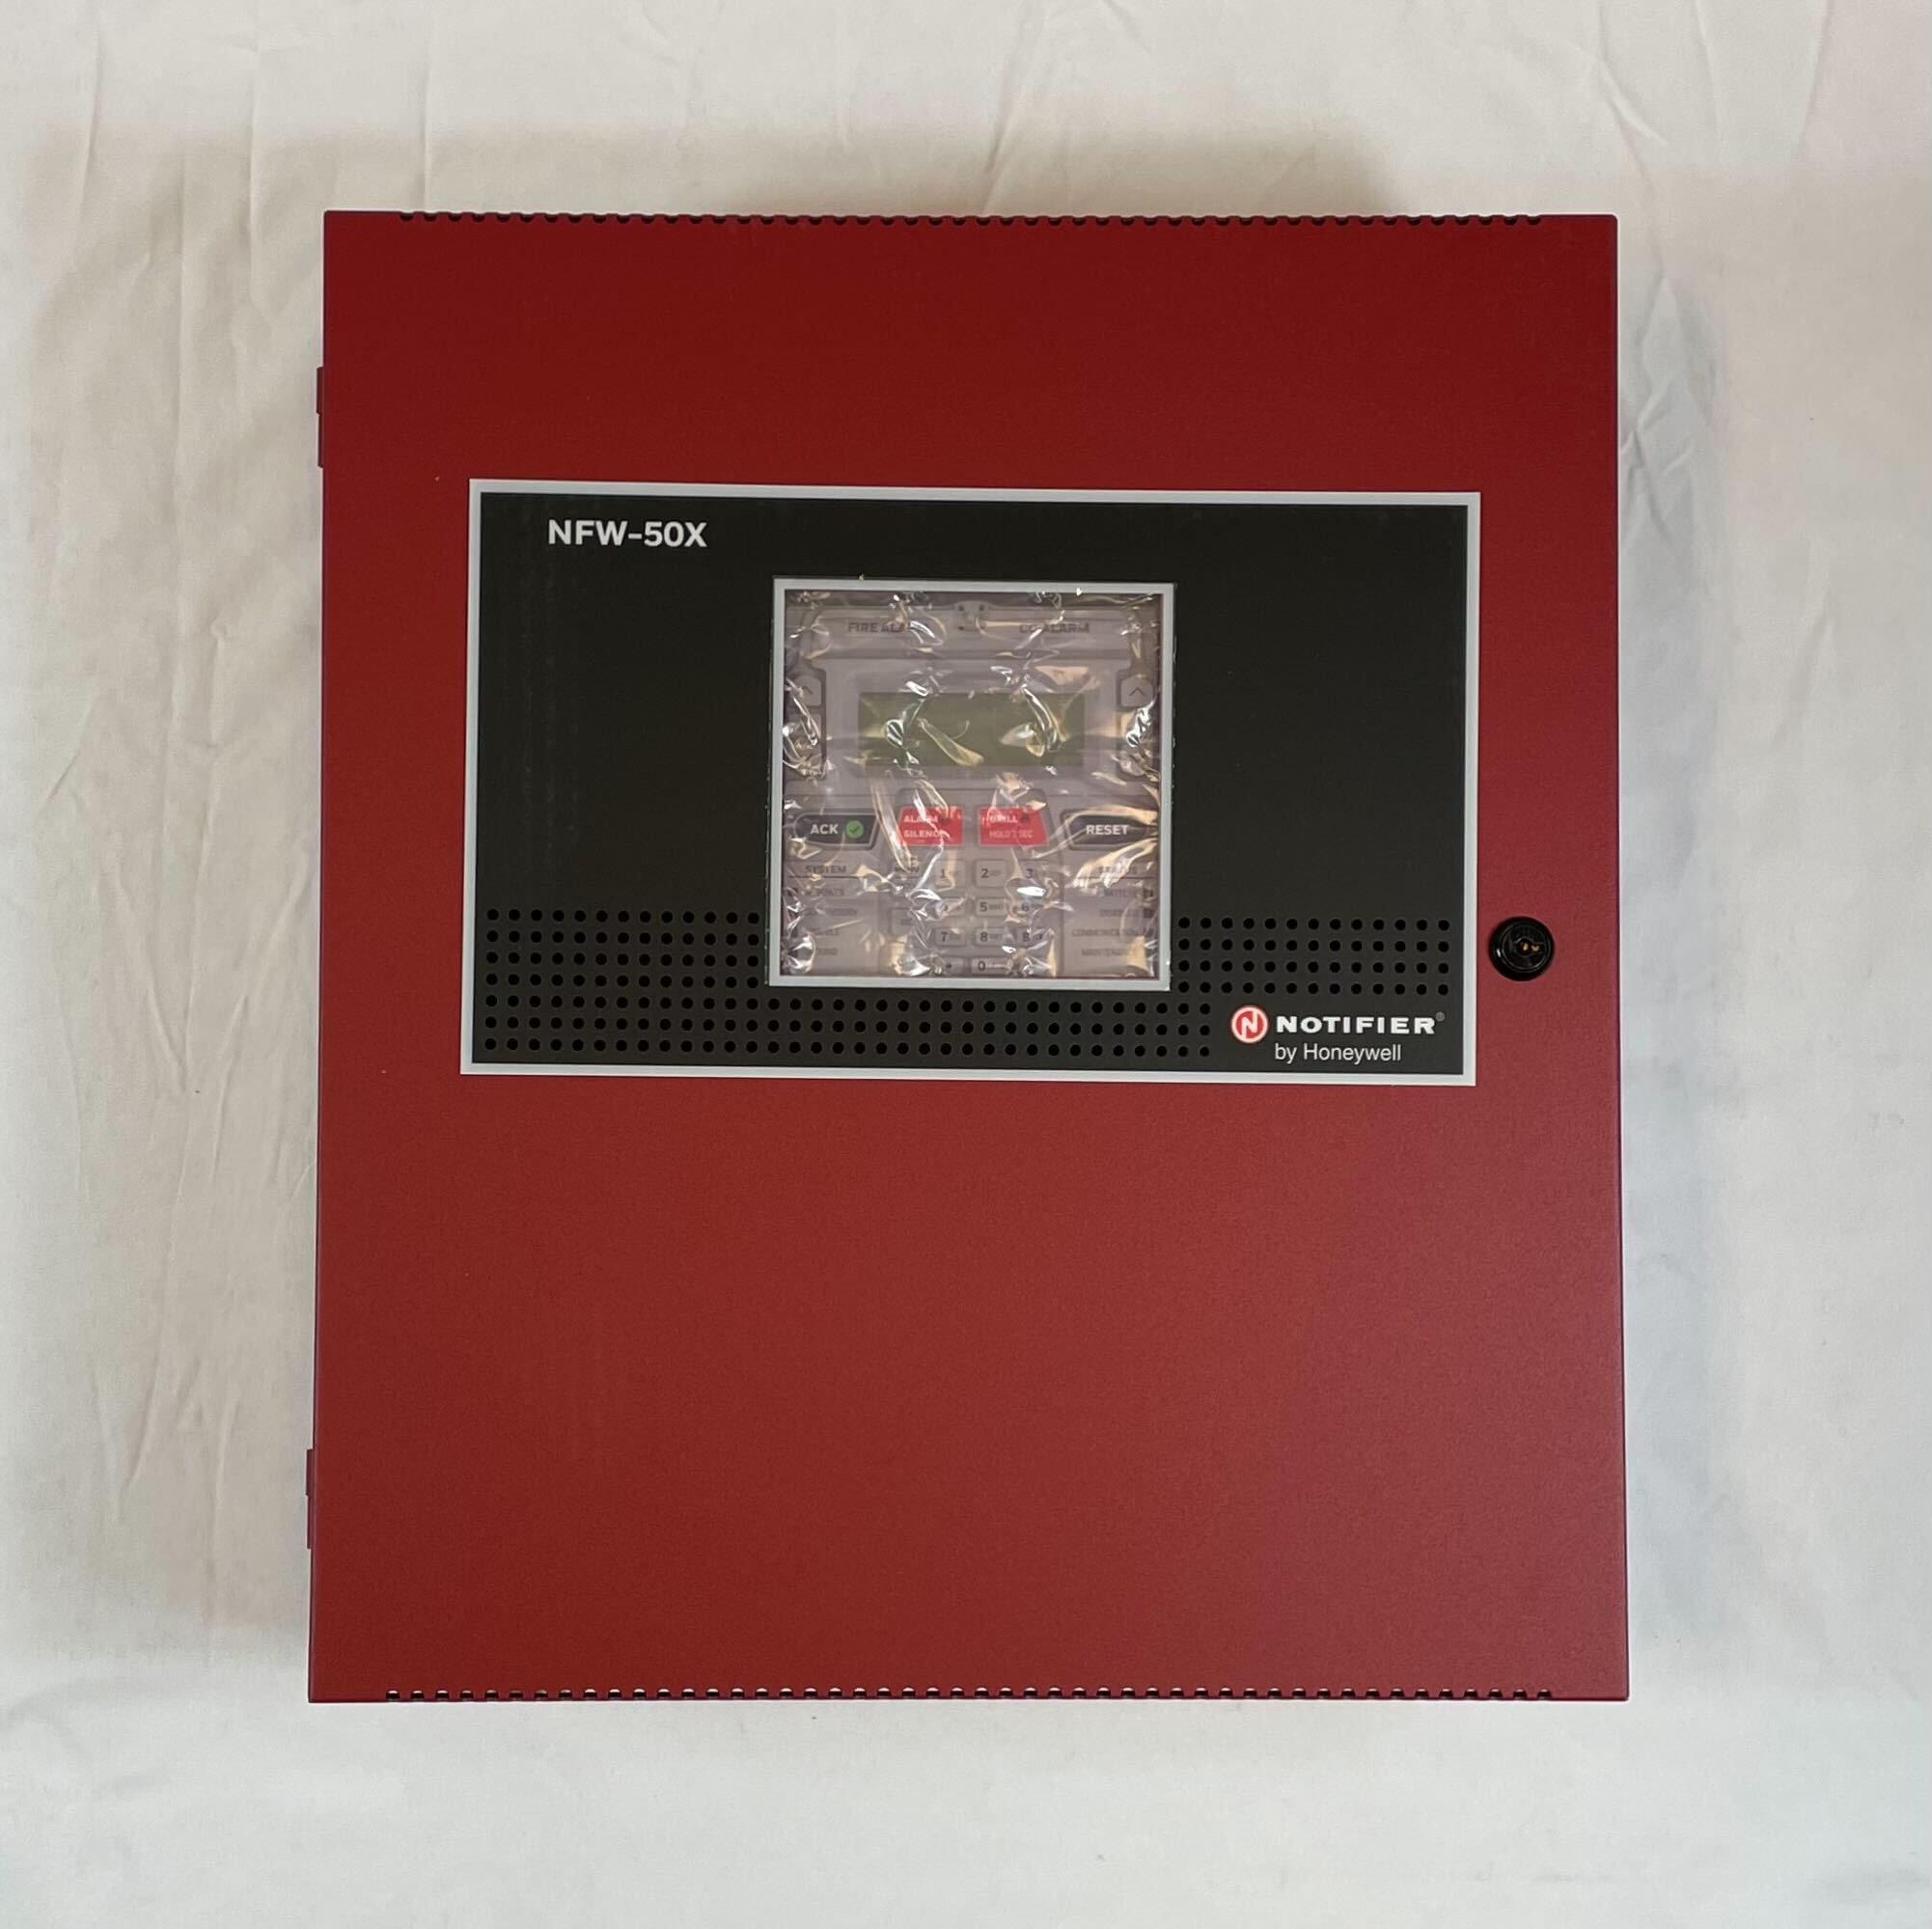 Notifier NFW-50XR - The Fire Alarm Supplier